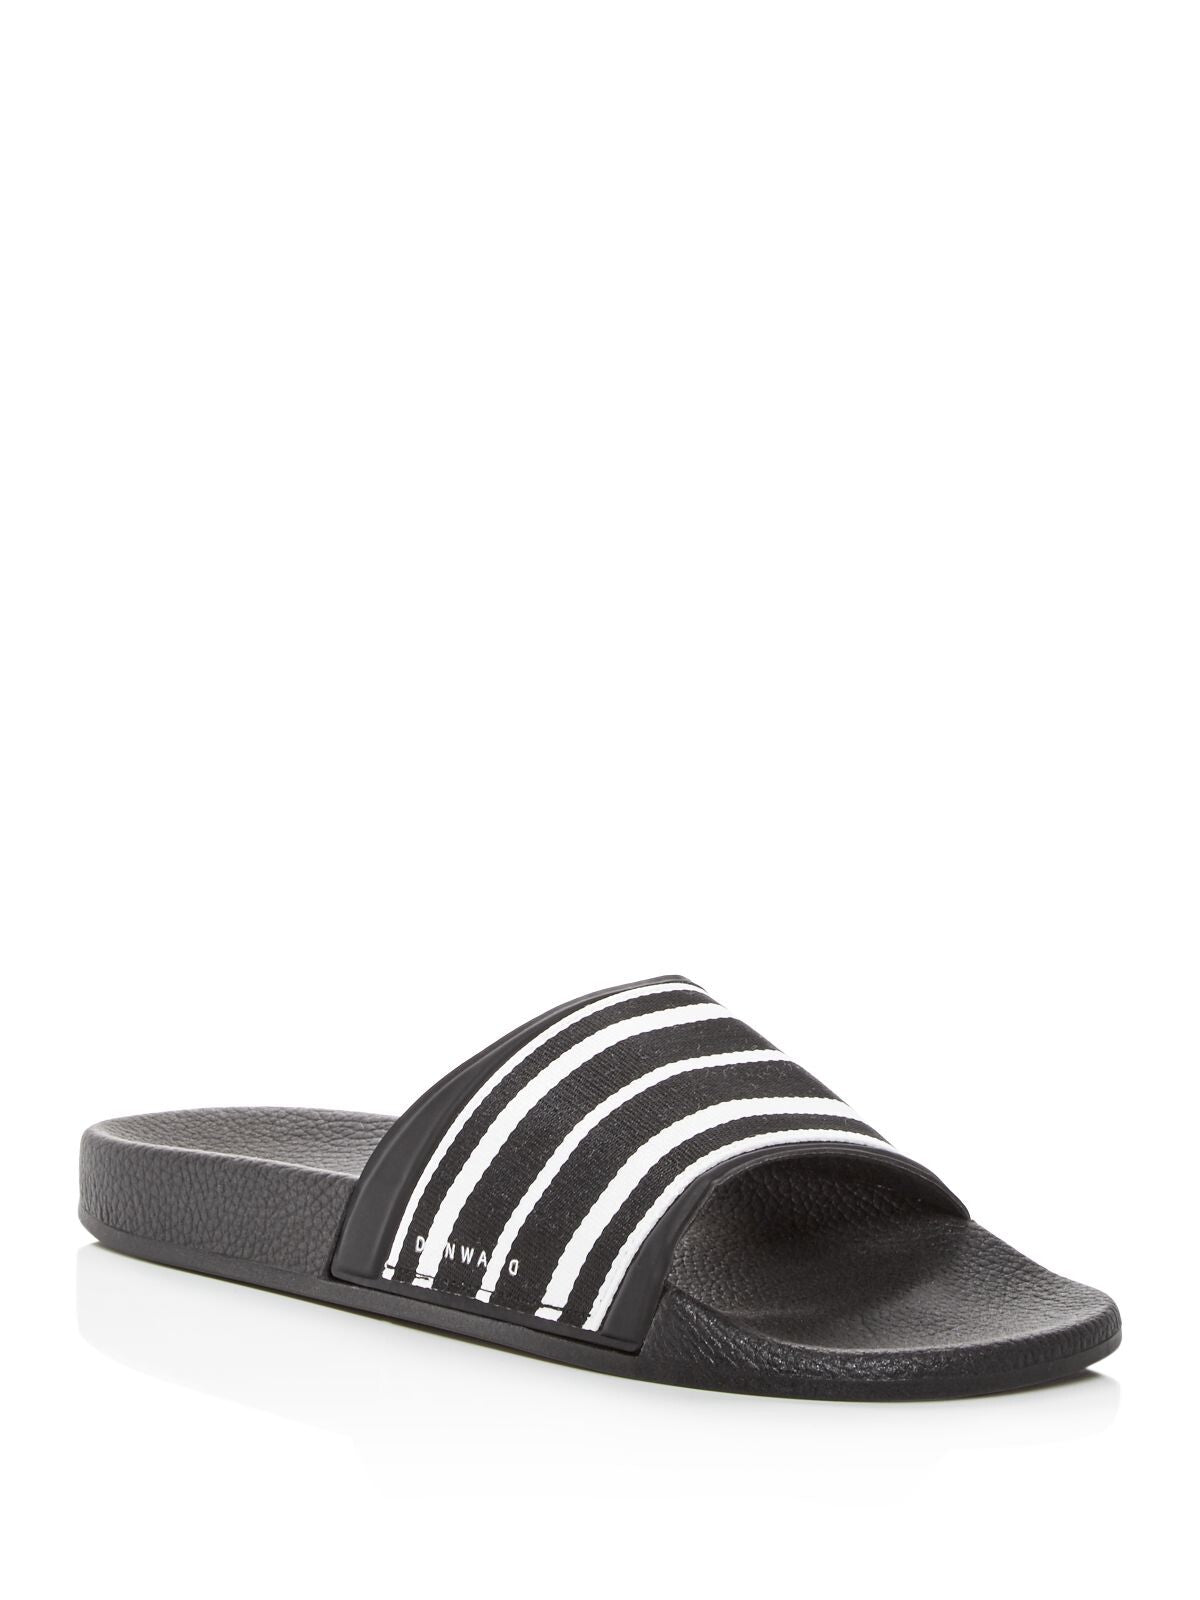 DAN WARD Mens Black Striped Comfort Round Toe Platform Slip On Slide Sandals Shoes 42